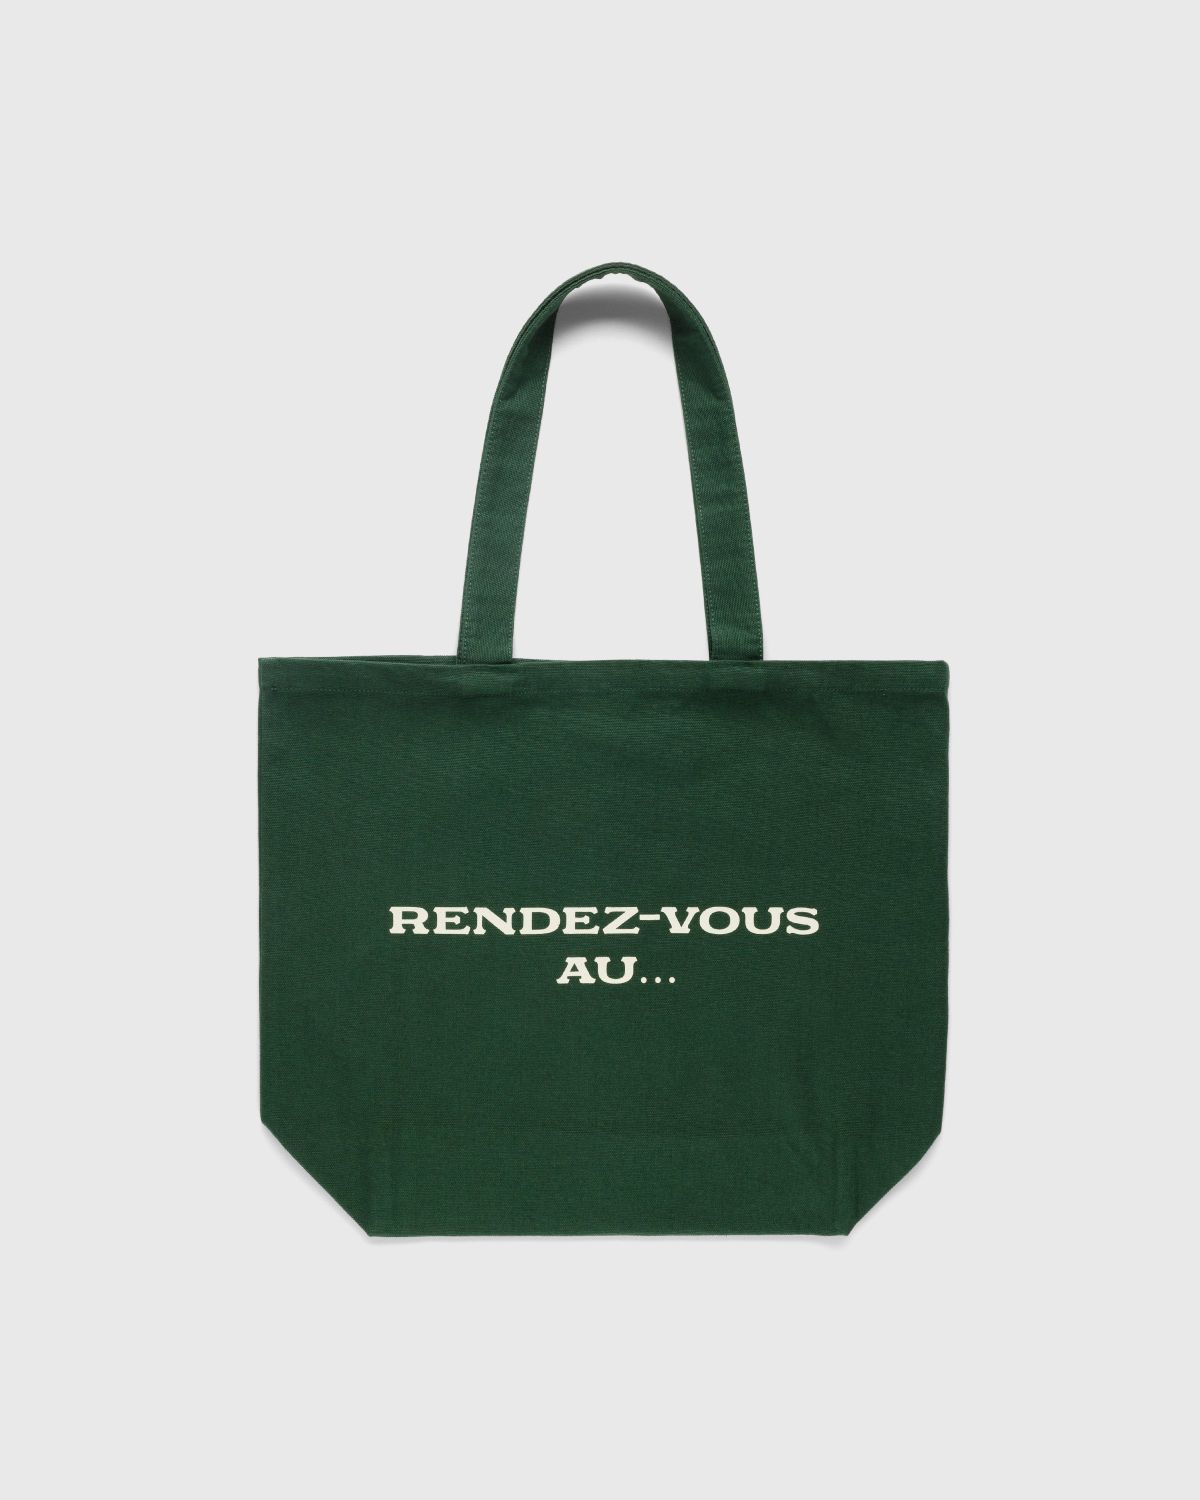 Café de Flore x Highsnobiety – Not In Paris 4 Rendez-vous Au Tote Bag Green - Bags - Green - Image 2